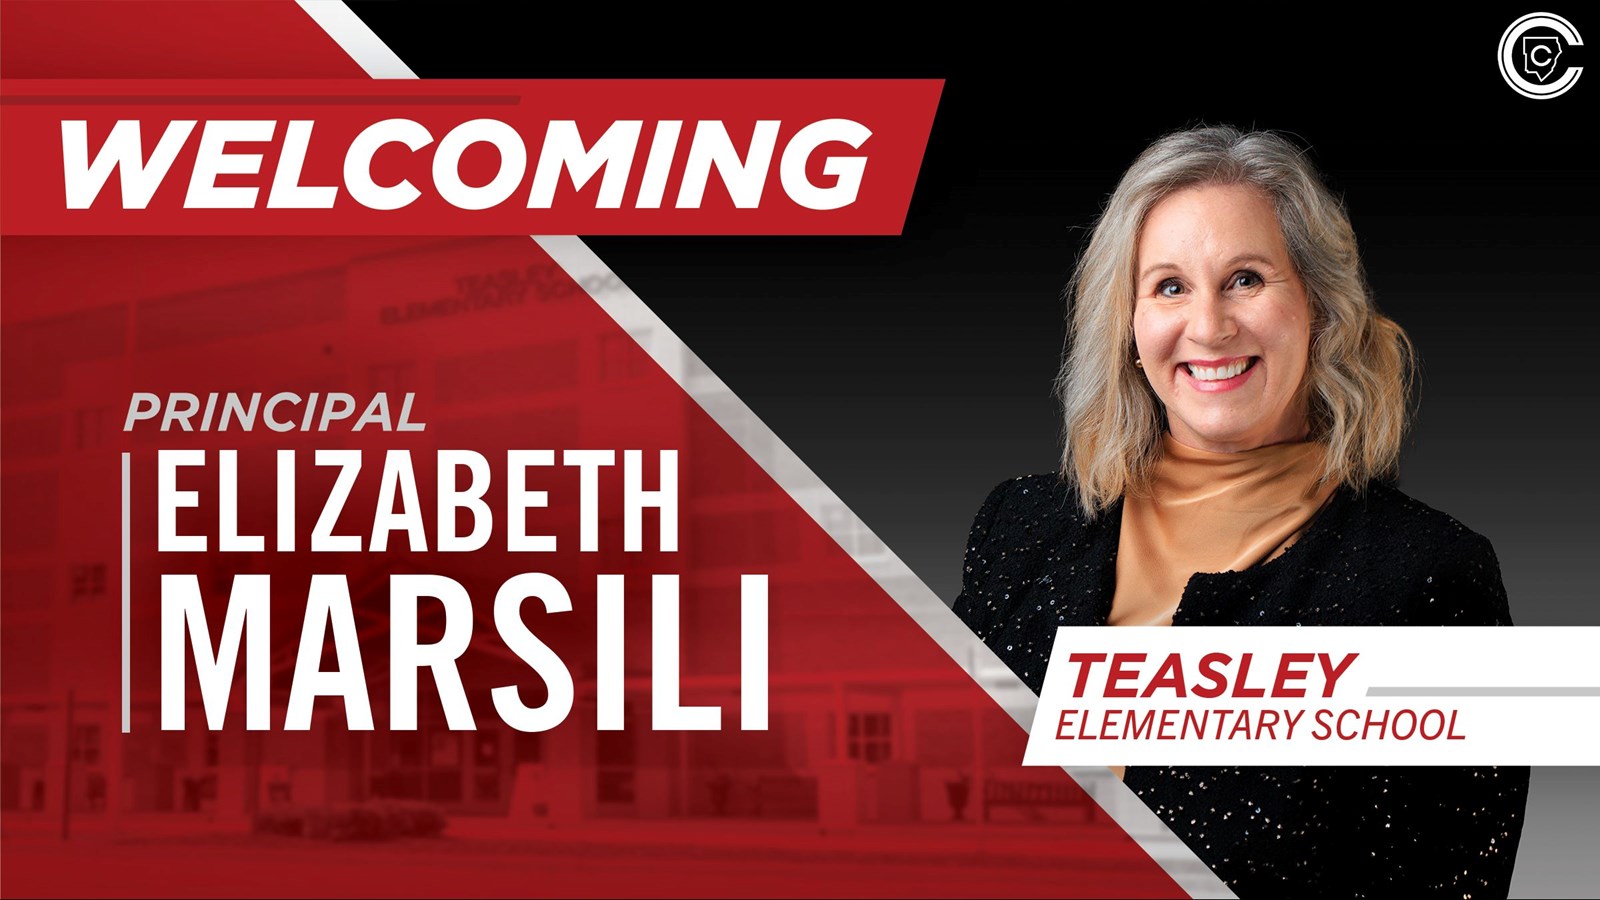 Elizabeth Marsili is the new principal of Teasley Elementary School.